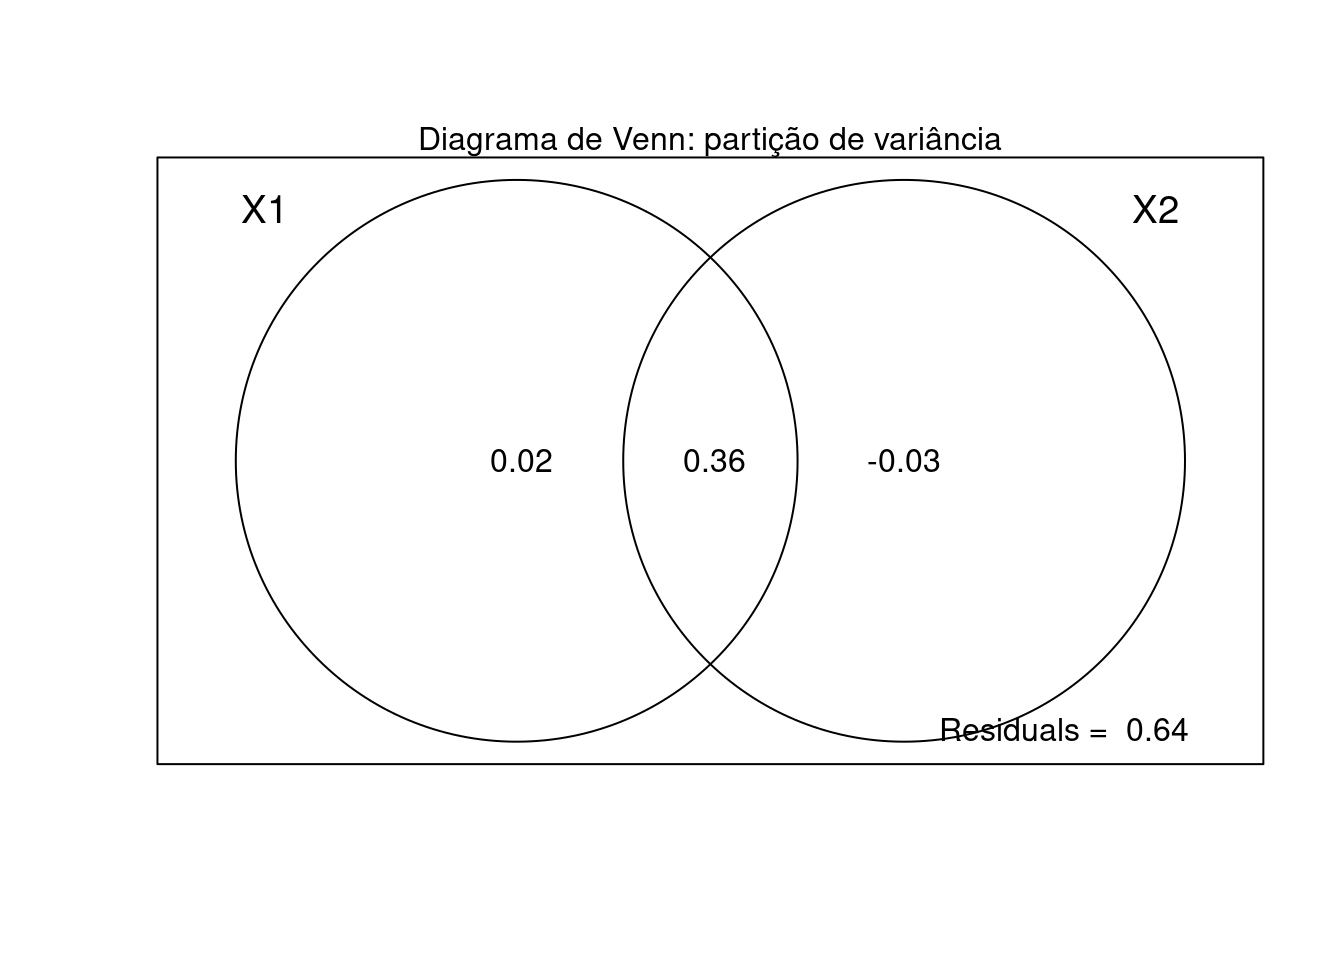 Diagrama de Venn mostrando a partição de variância da RDA.